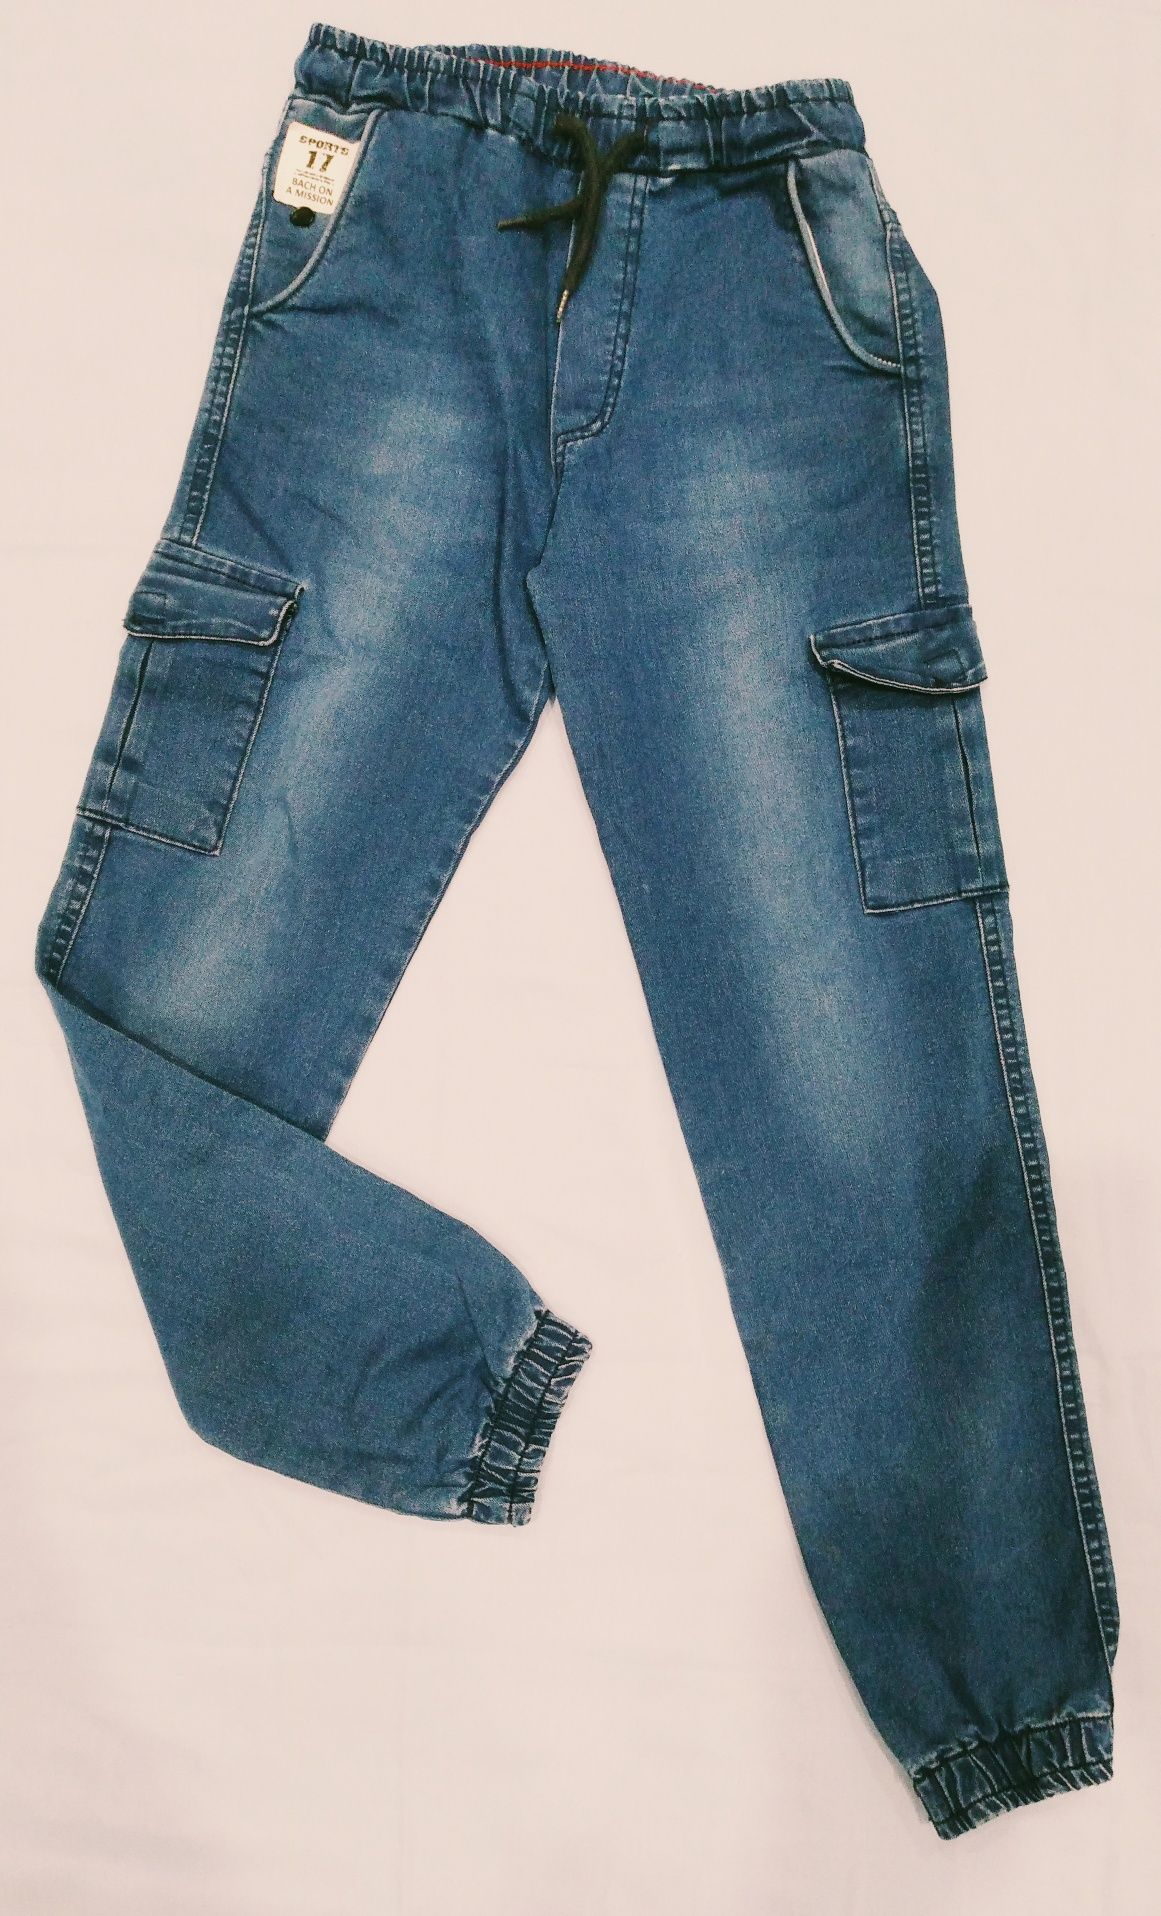 Продам джогеры, джинсы для мальчика